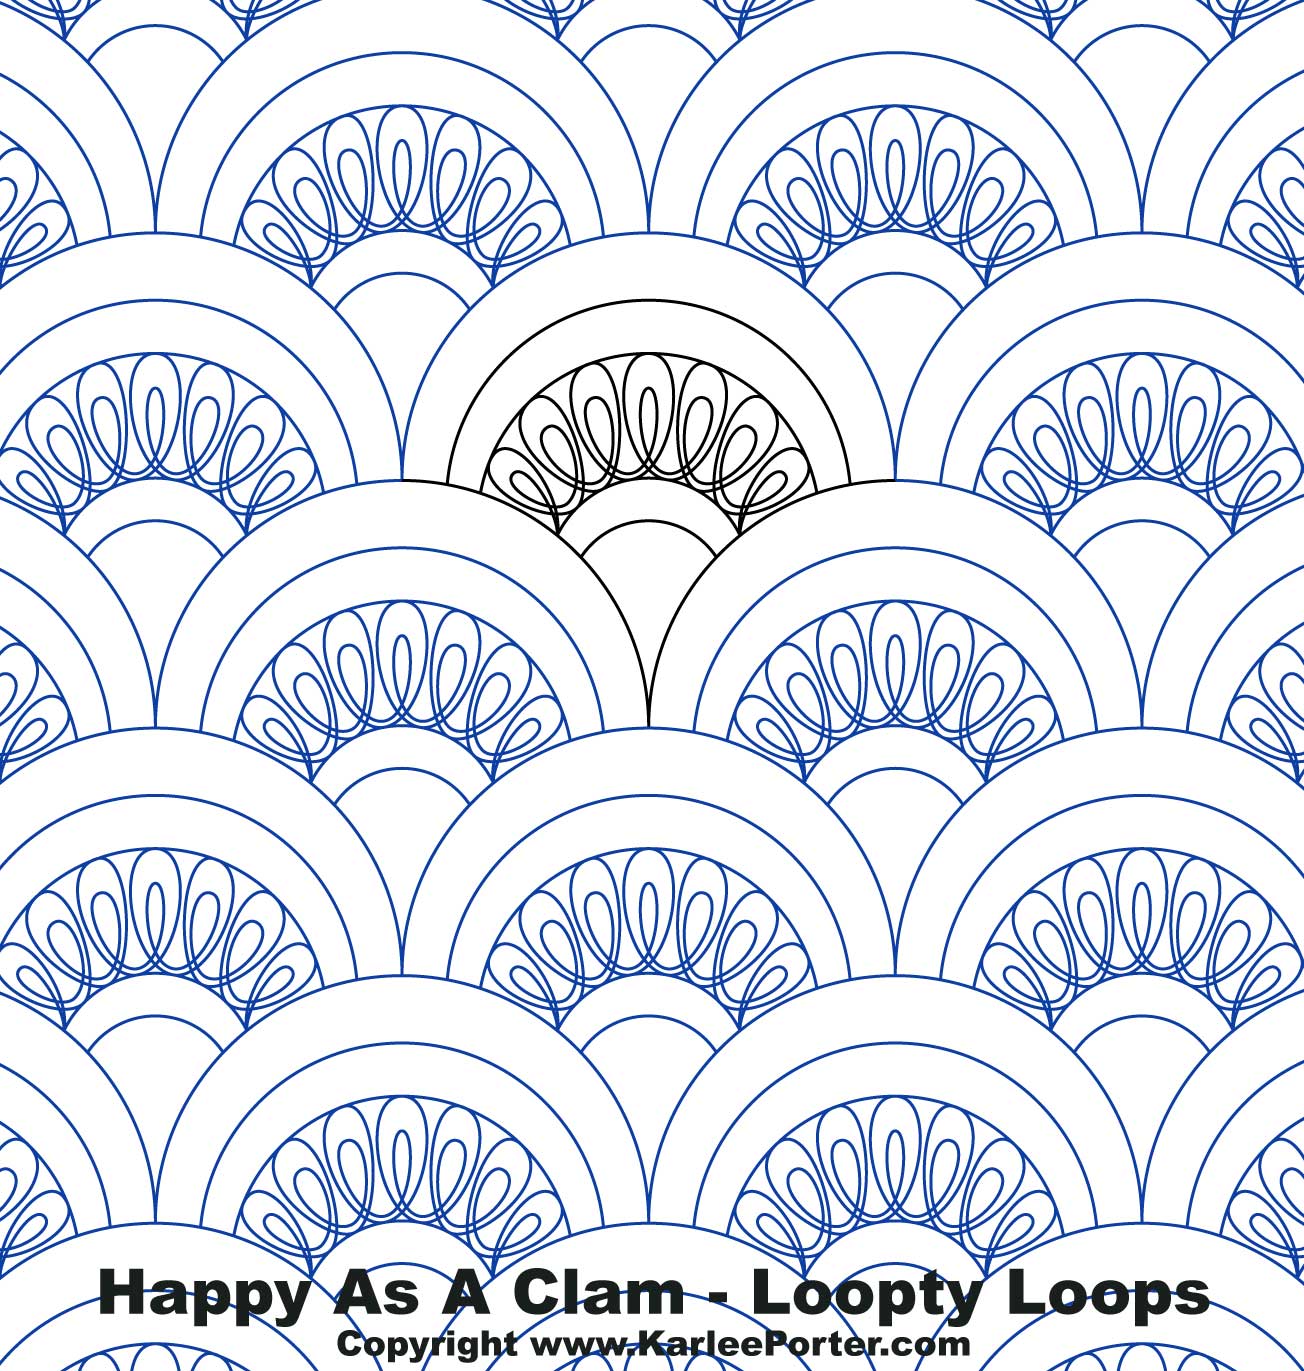 Happy As A Clam - Loopy Loop